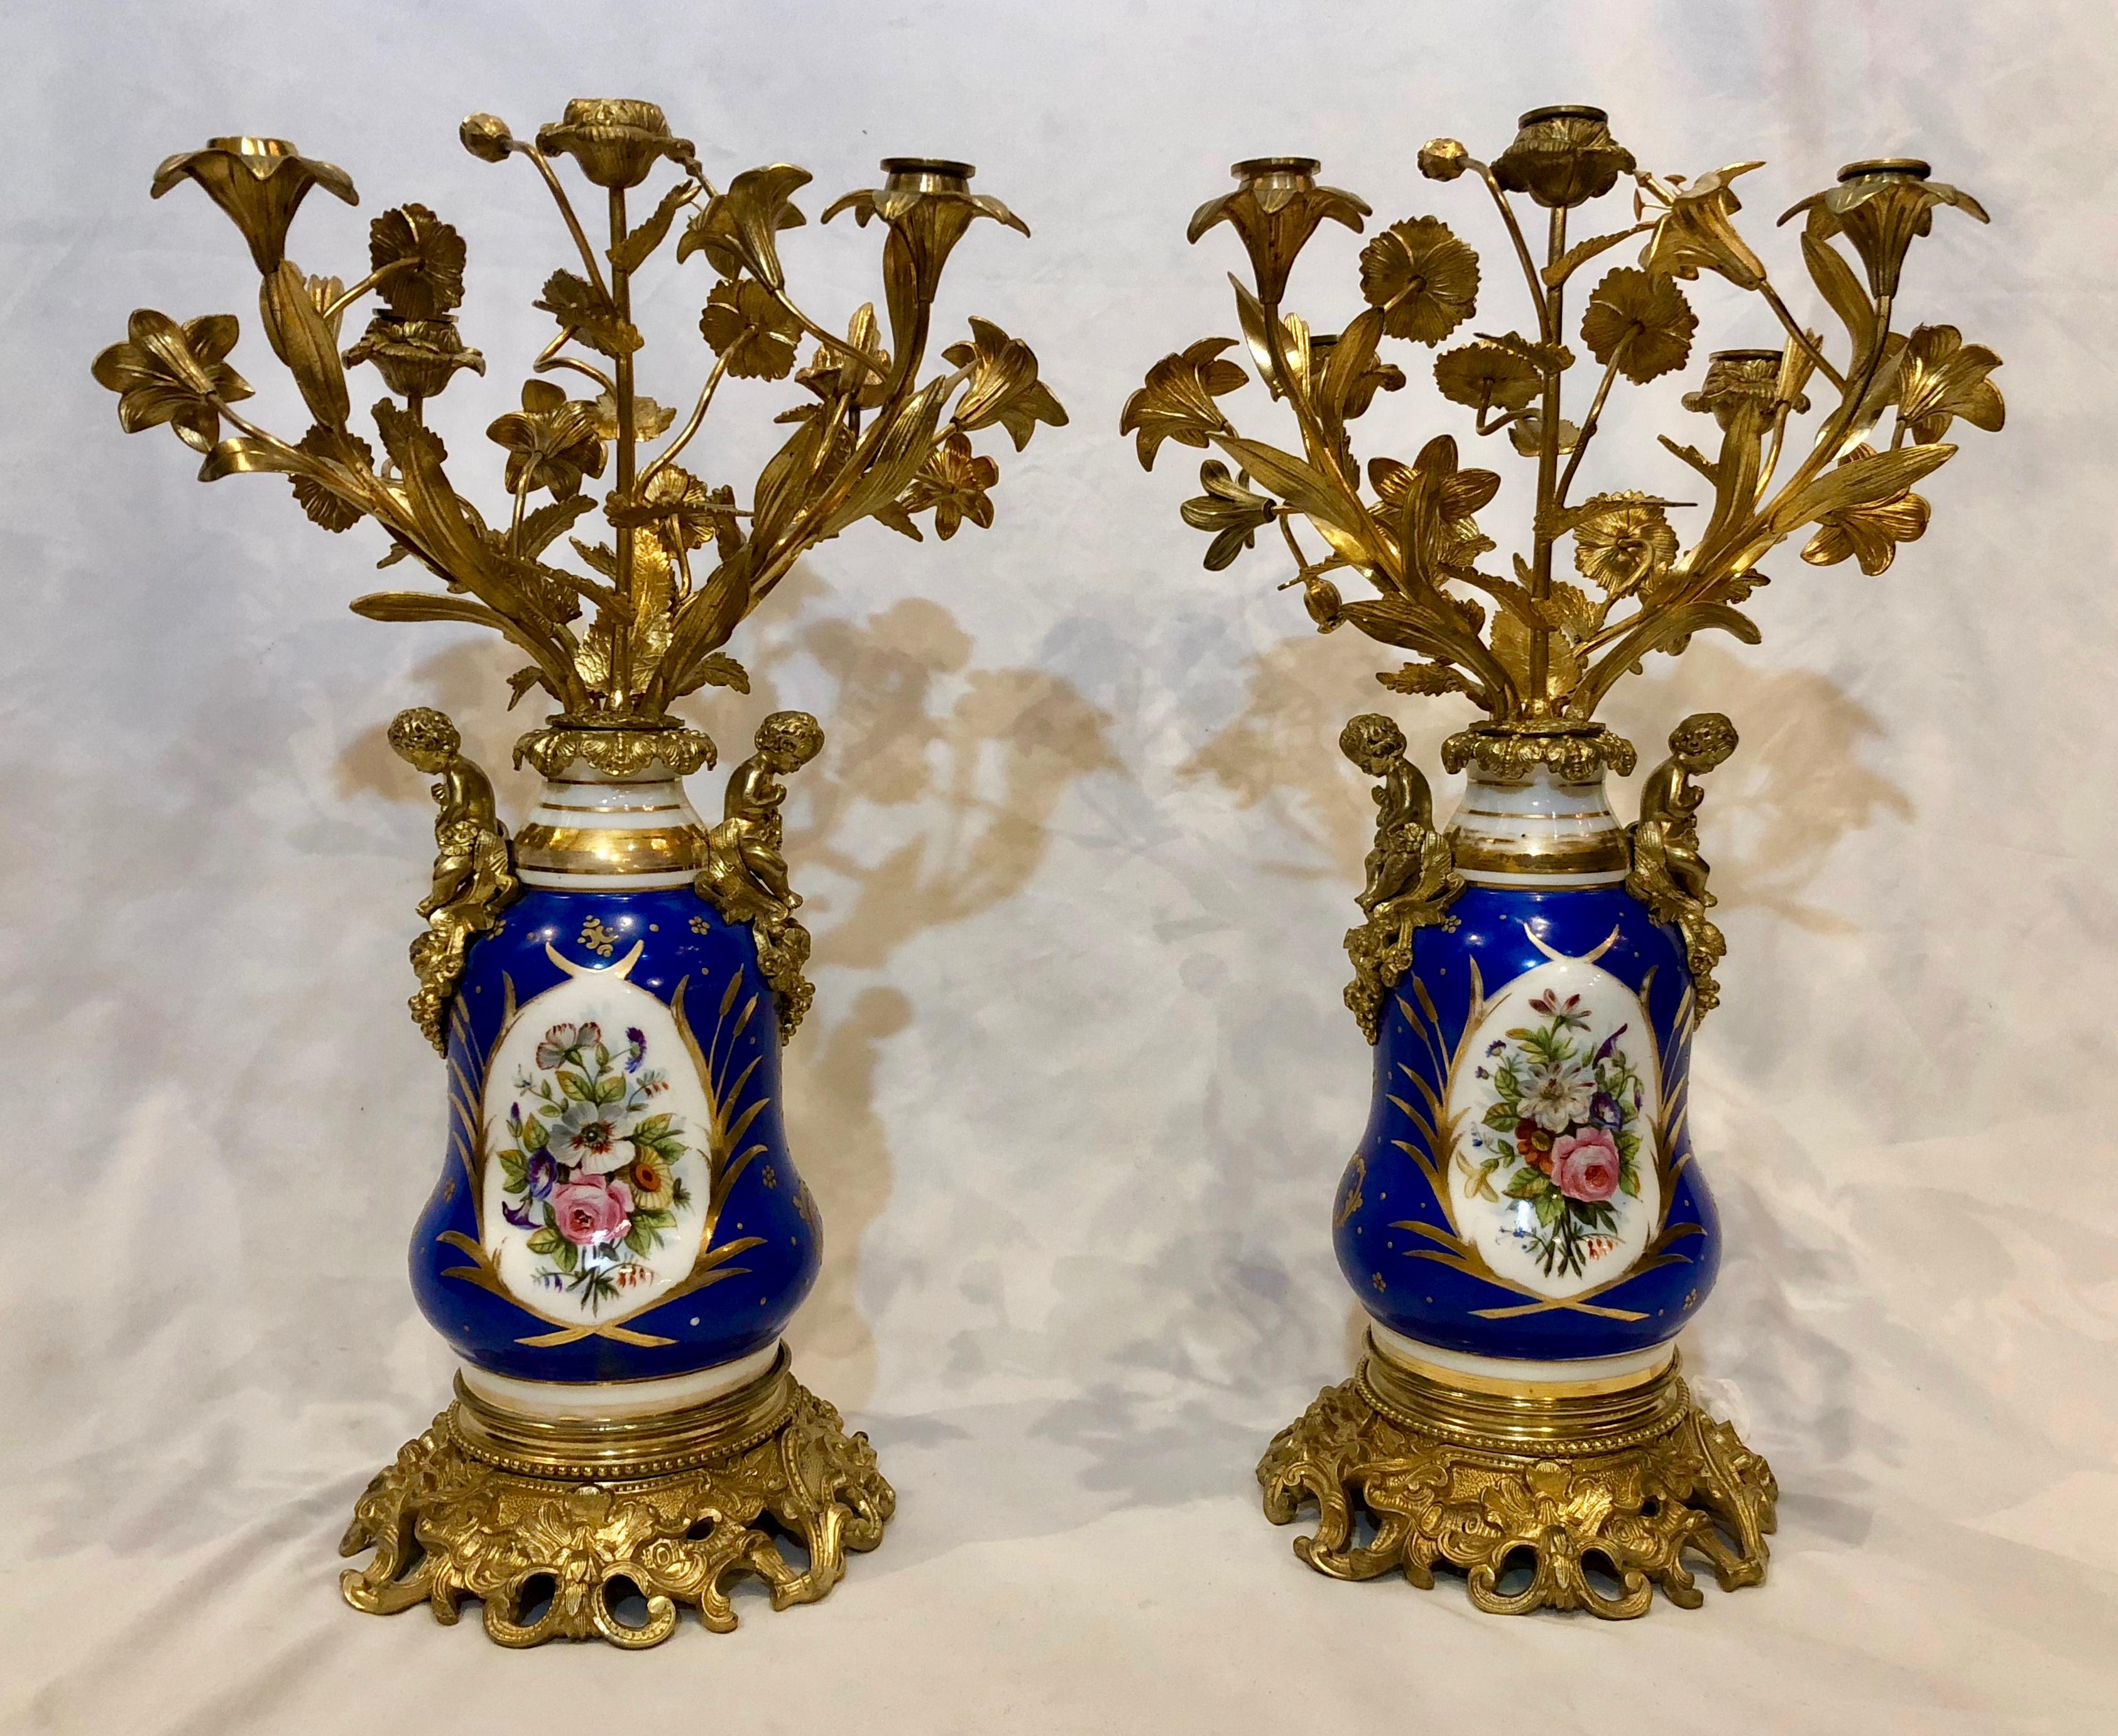 Diese Kandelaber aus dem alten Paris mit ihren floralen Armen sind sehr attraktiv. Das Porzellan hat seine schöne Farbe behalten.  